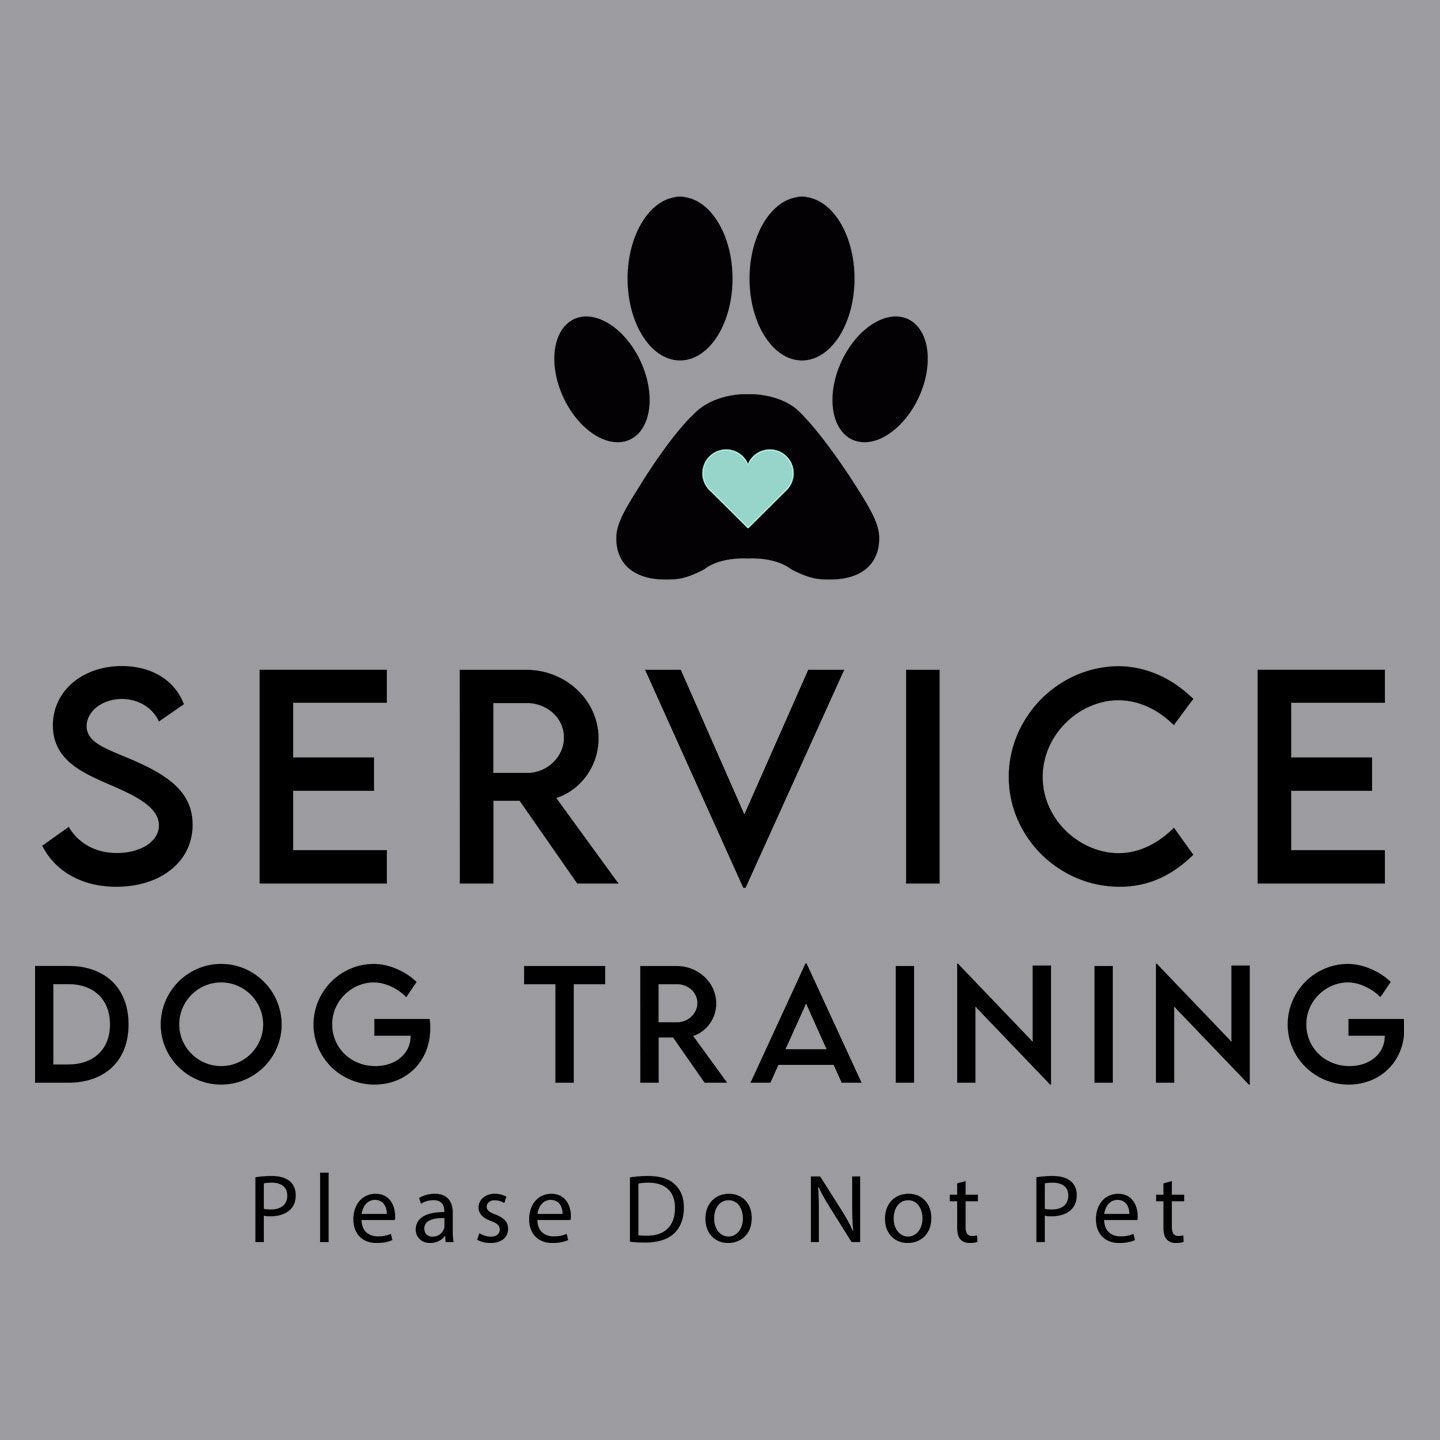 Service Dog Training - Adult Unisex T-Shirt